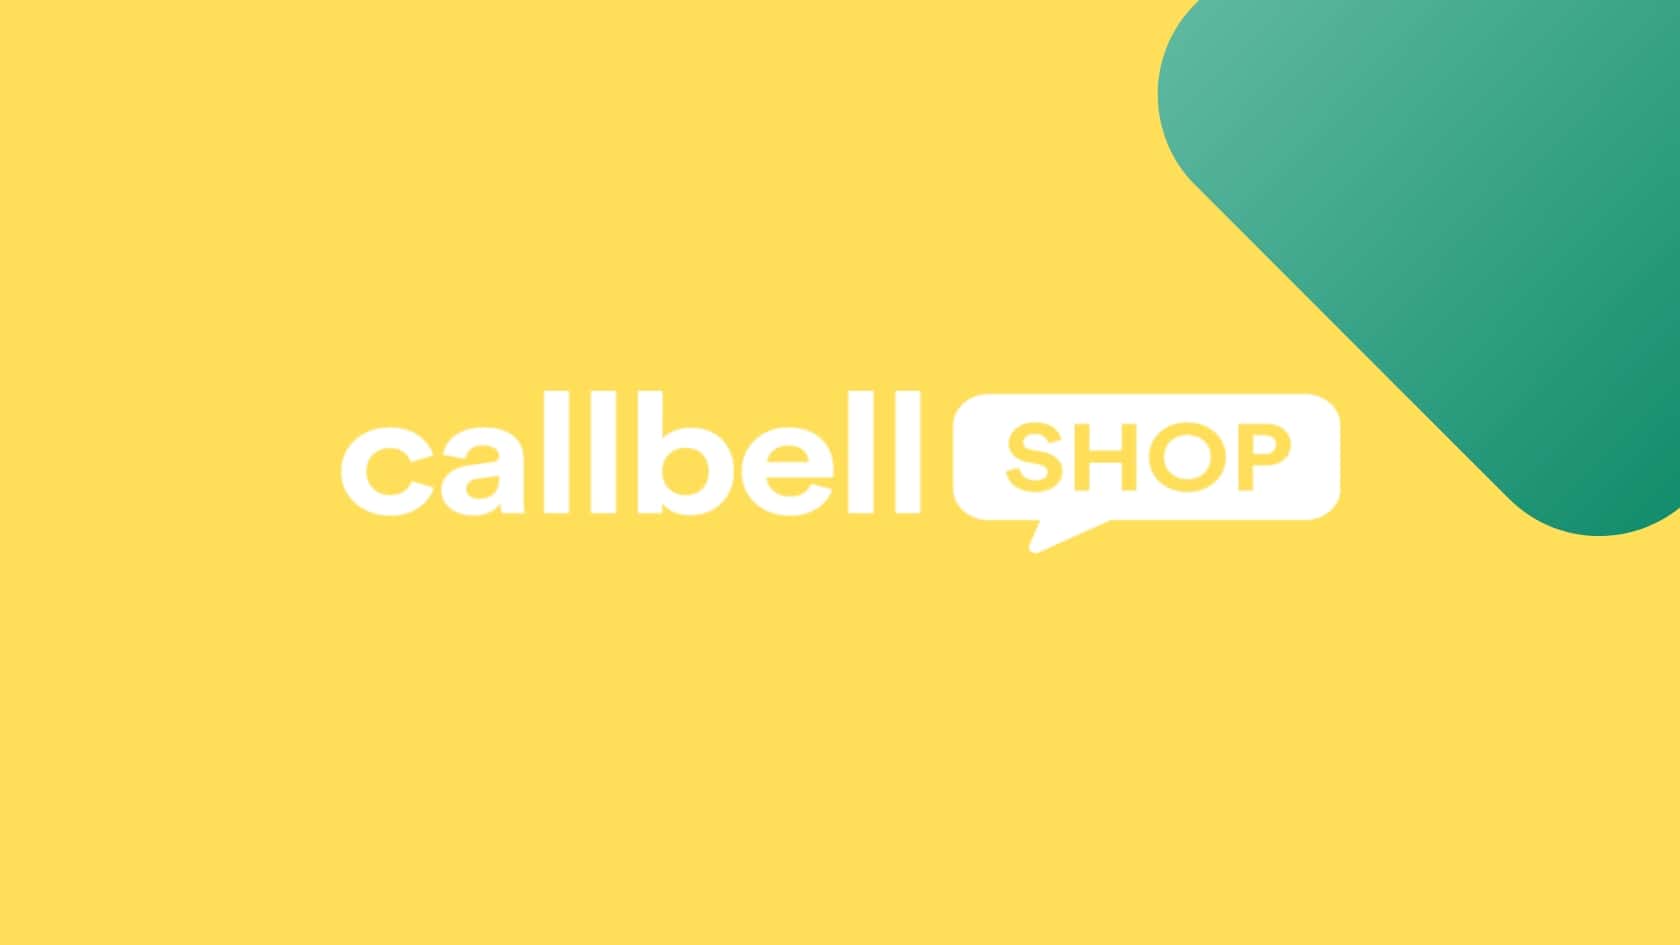 Optimiza el proceso de compra de tu tienda virtual con Callbell Shop